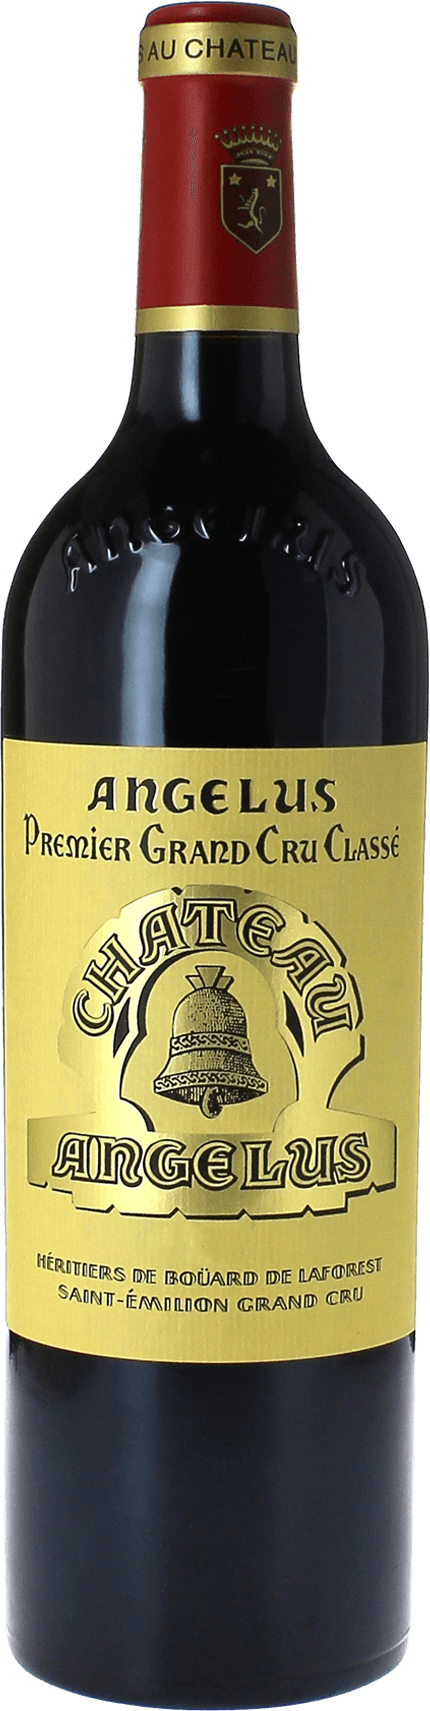 Angelus 2019 1er Grand cru class A Saint-Emilion, Bordeaux rouge